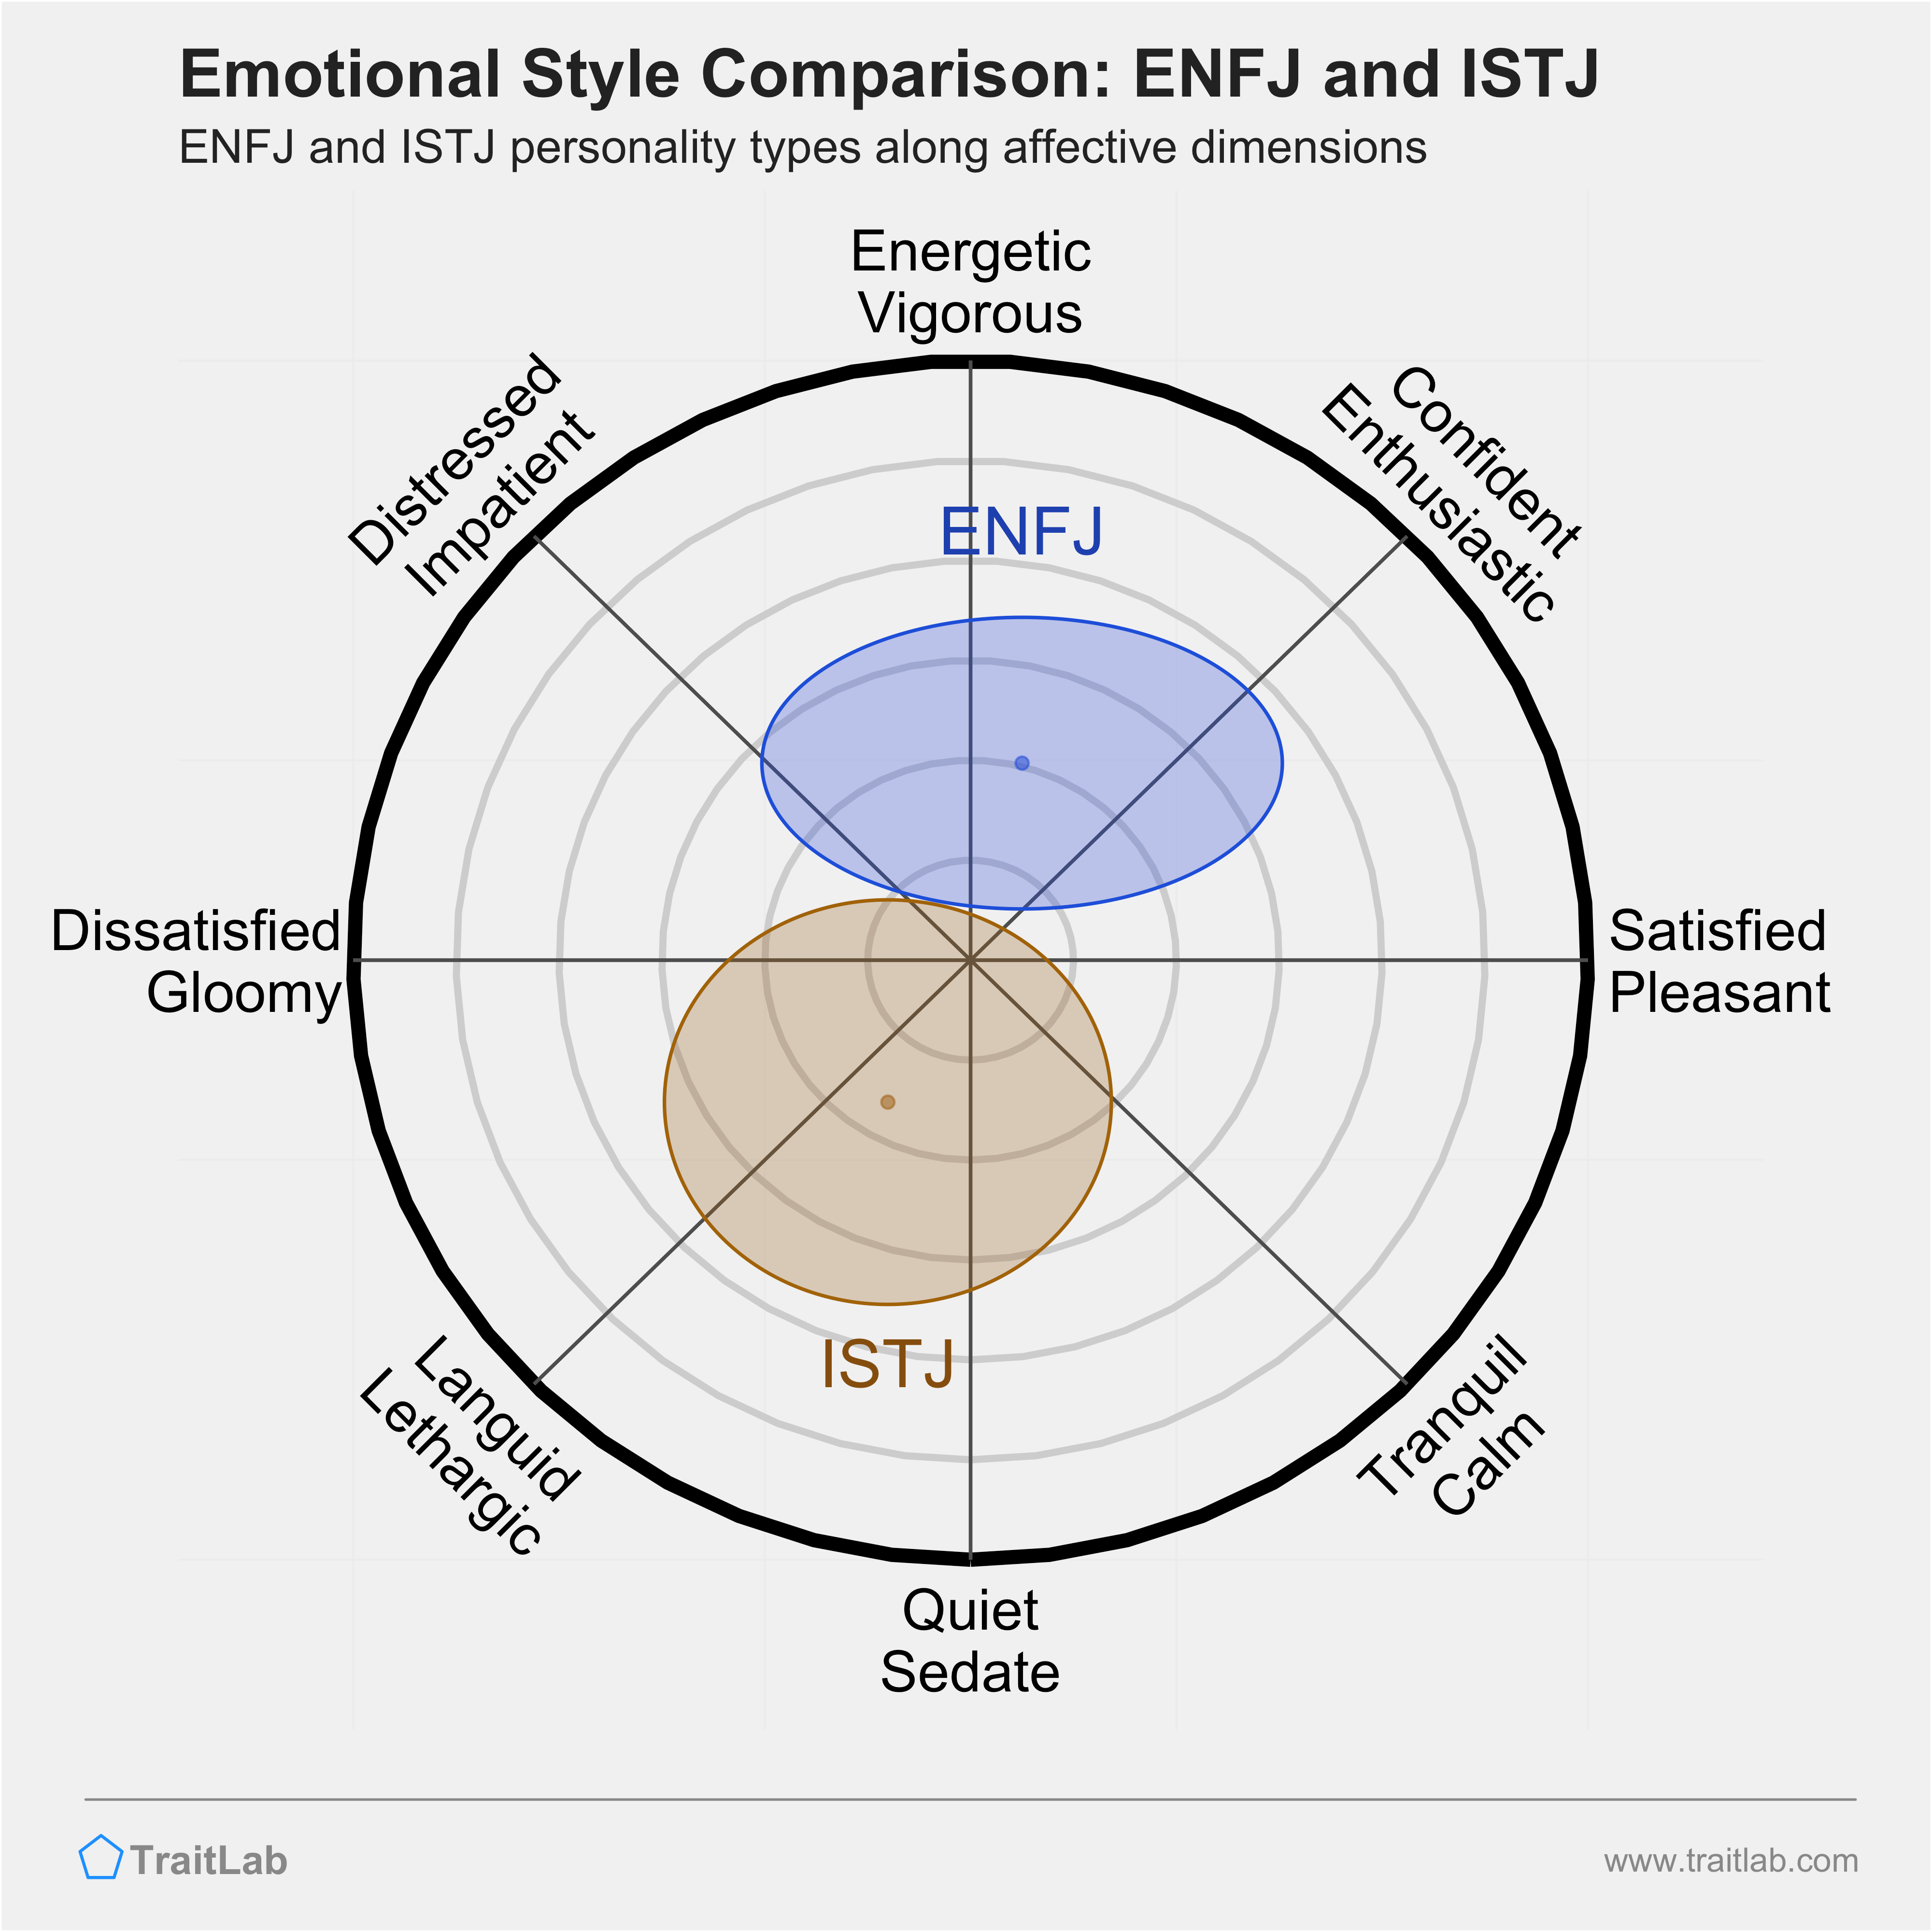 ENFJ and ISTJ comparison across emotional (affective) dimensions